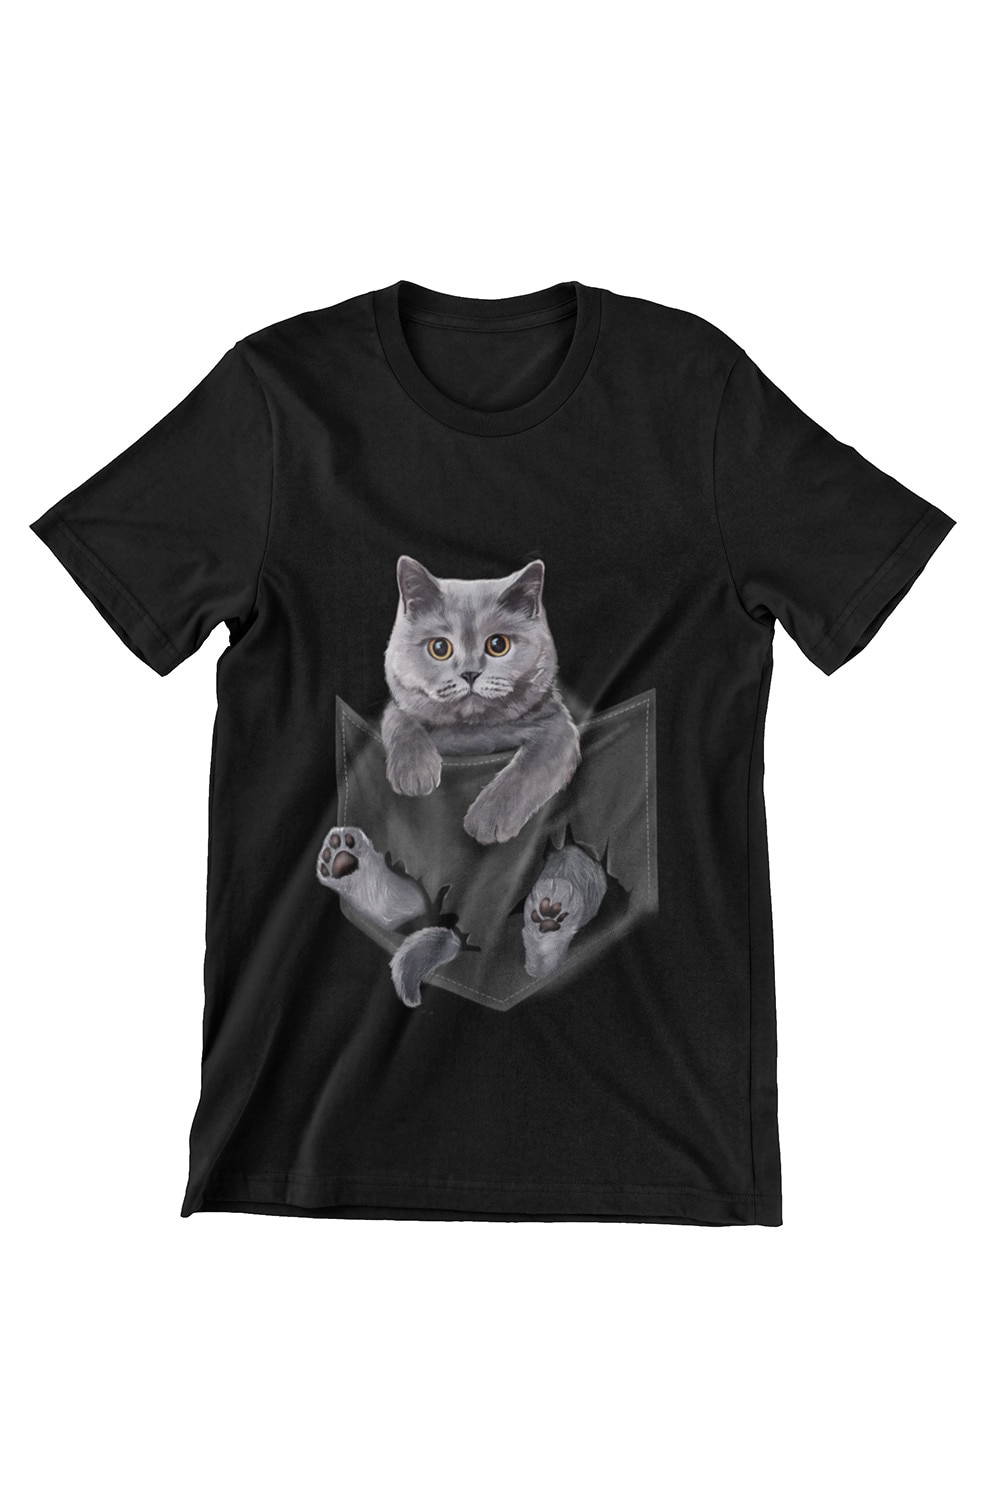 Tricou Femei Pisici, Cat in Pocket, negru eMAG.ro